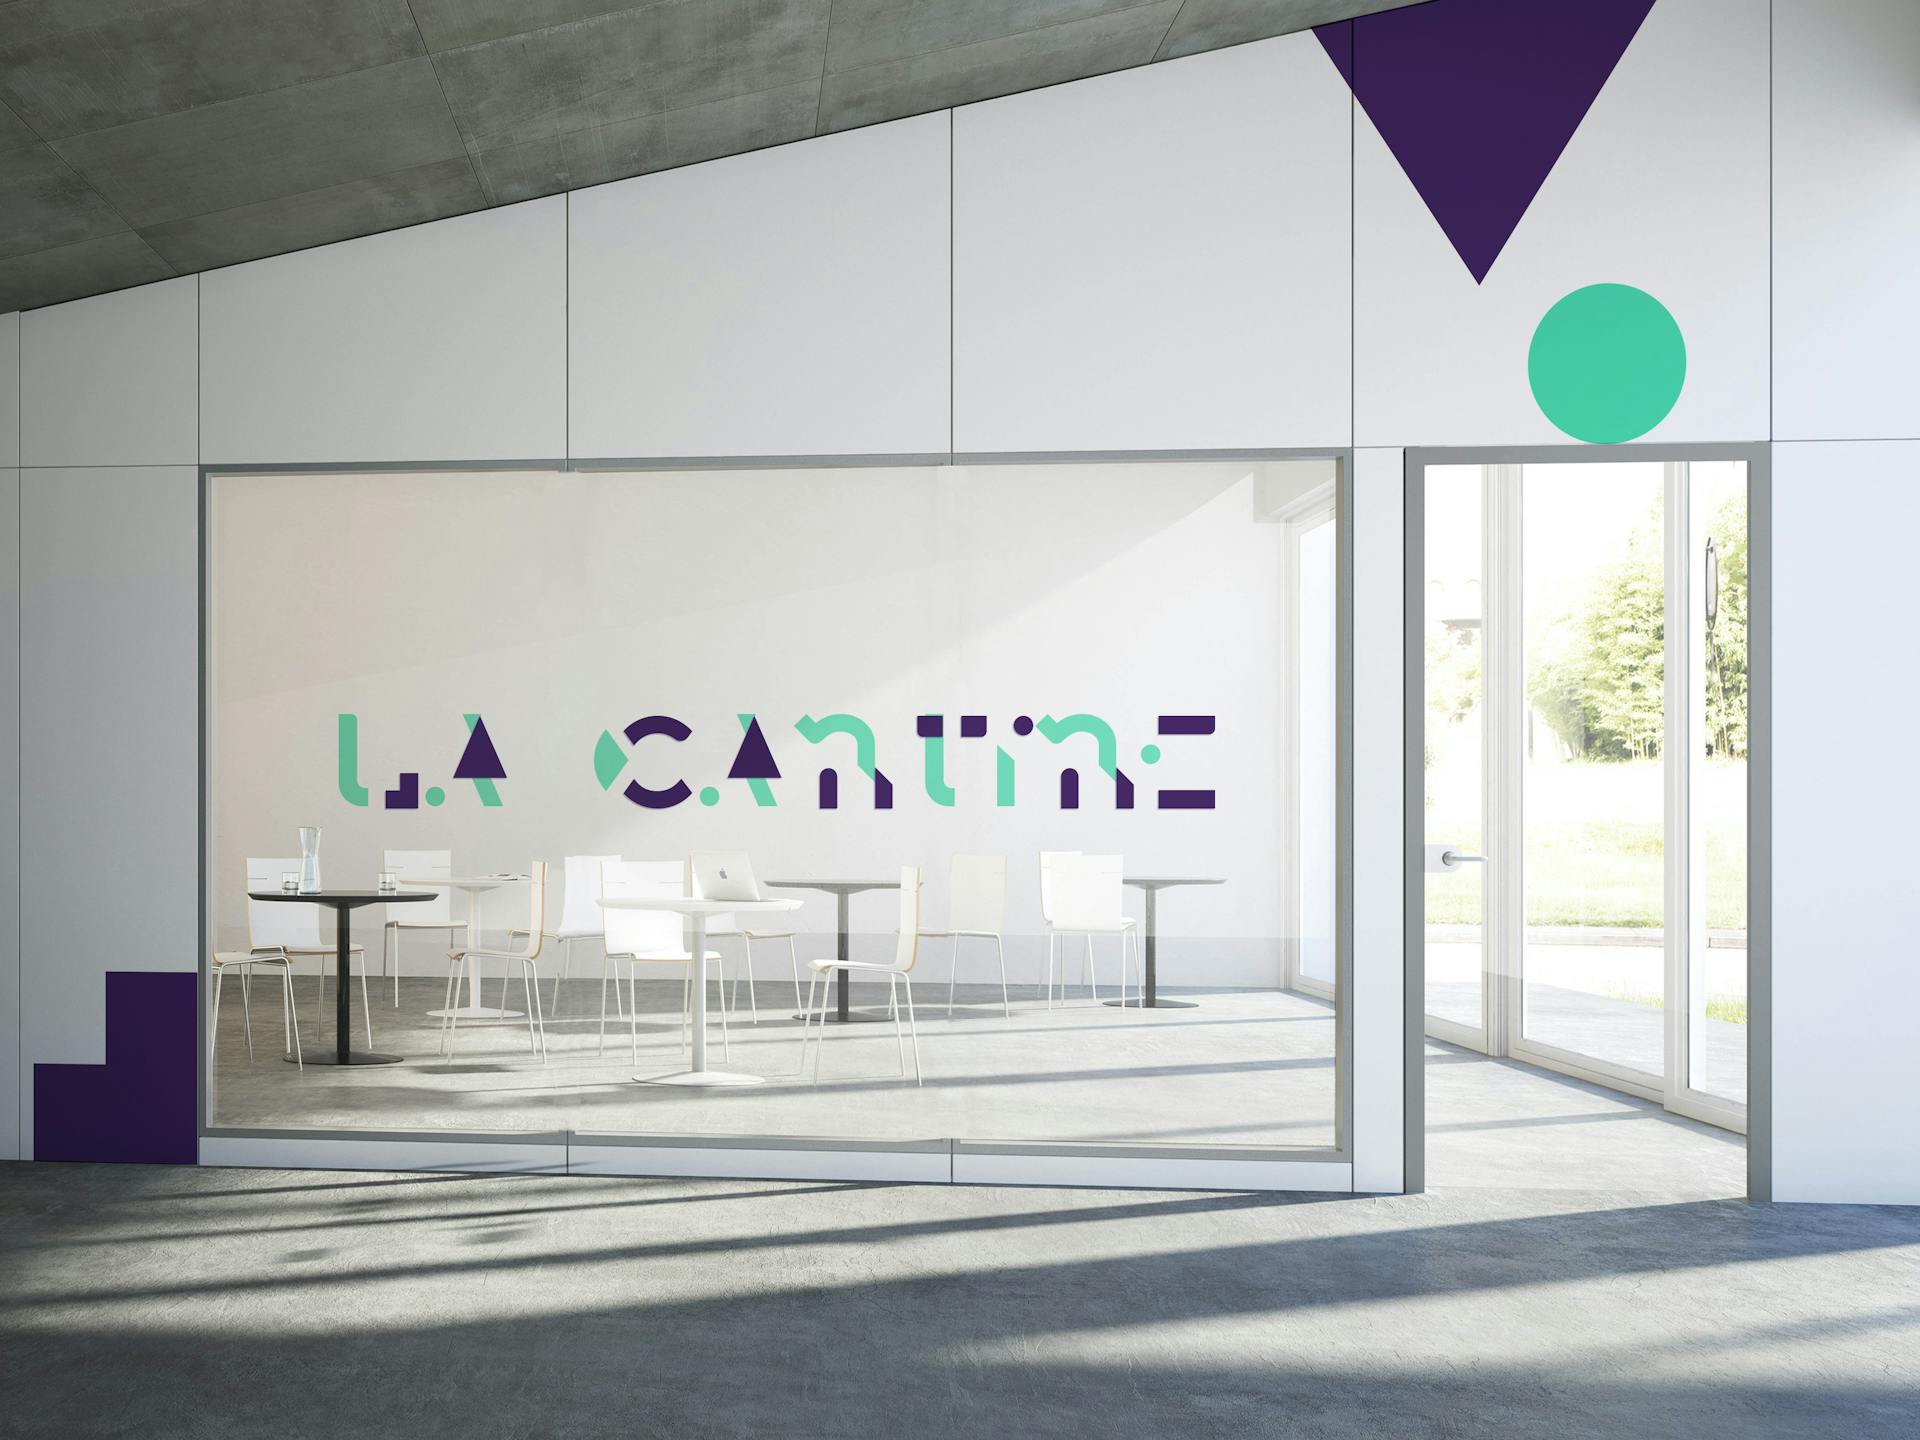 Des stickers muraux au sein d'une salle de réunion représentant le logo de Cantine Numérique.